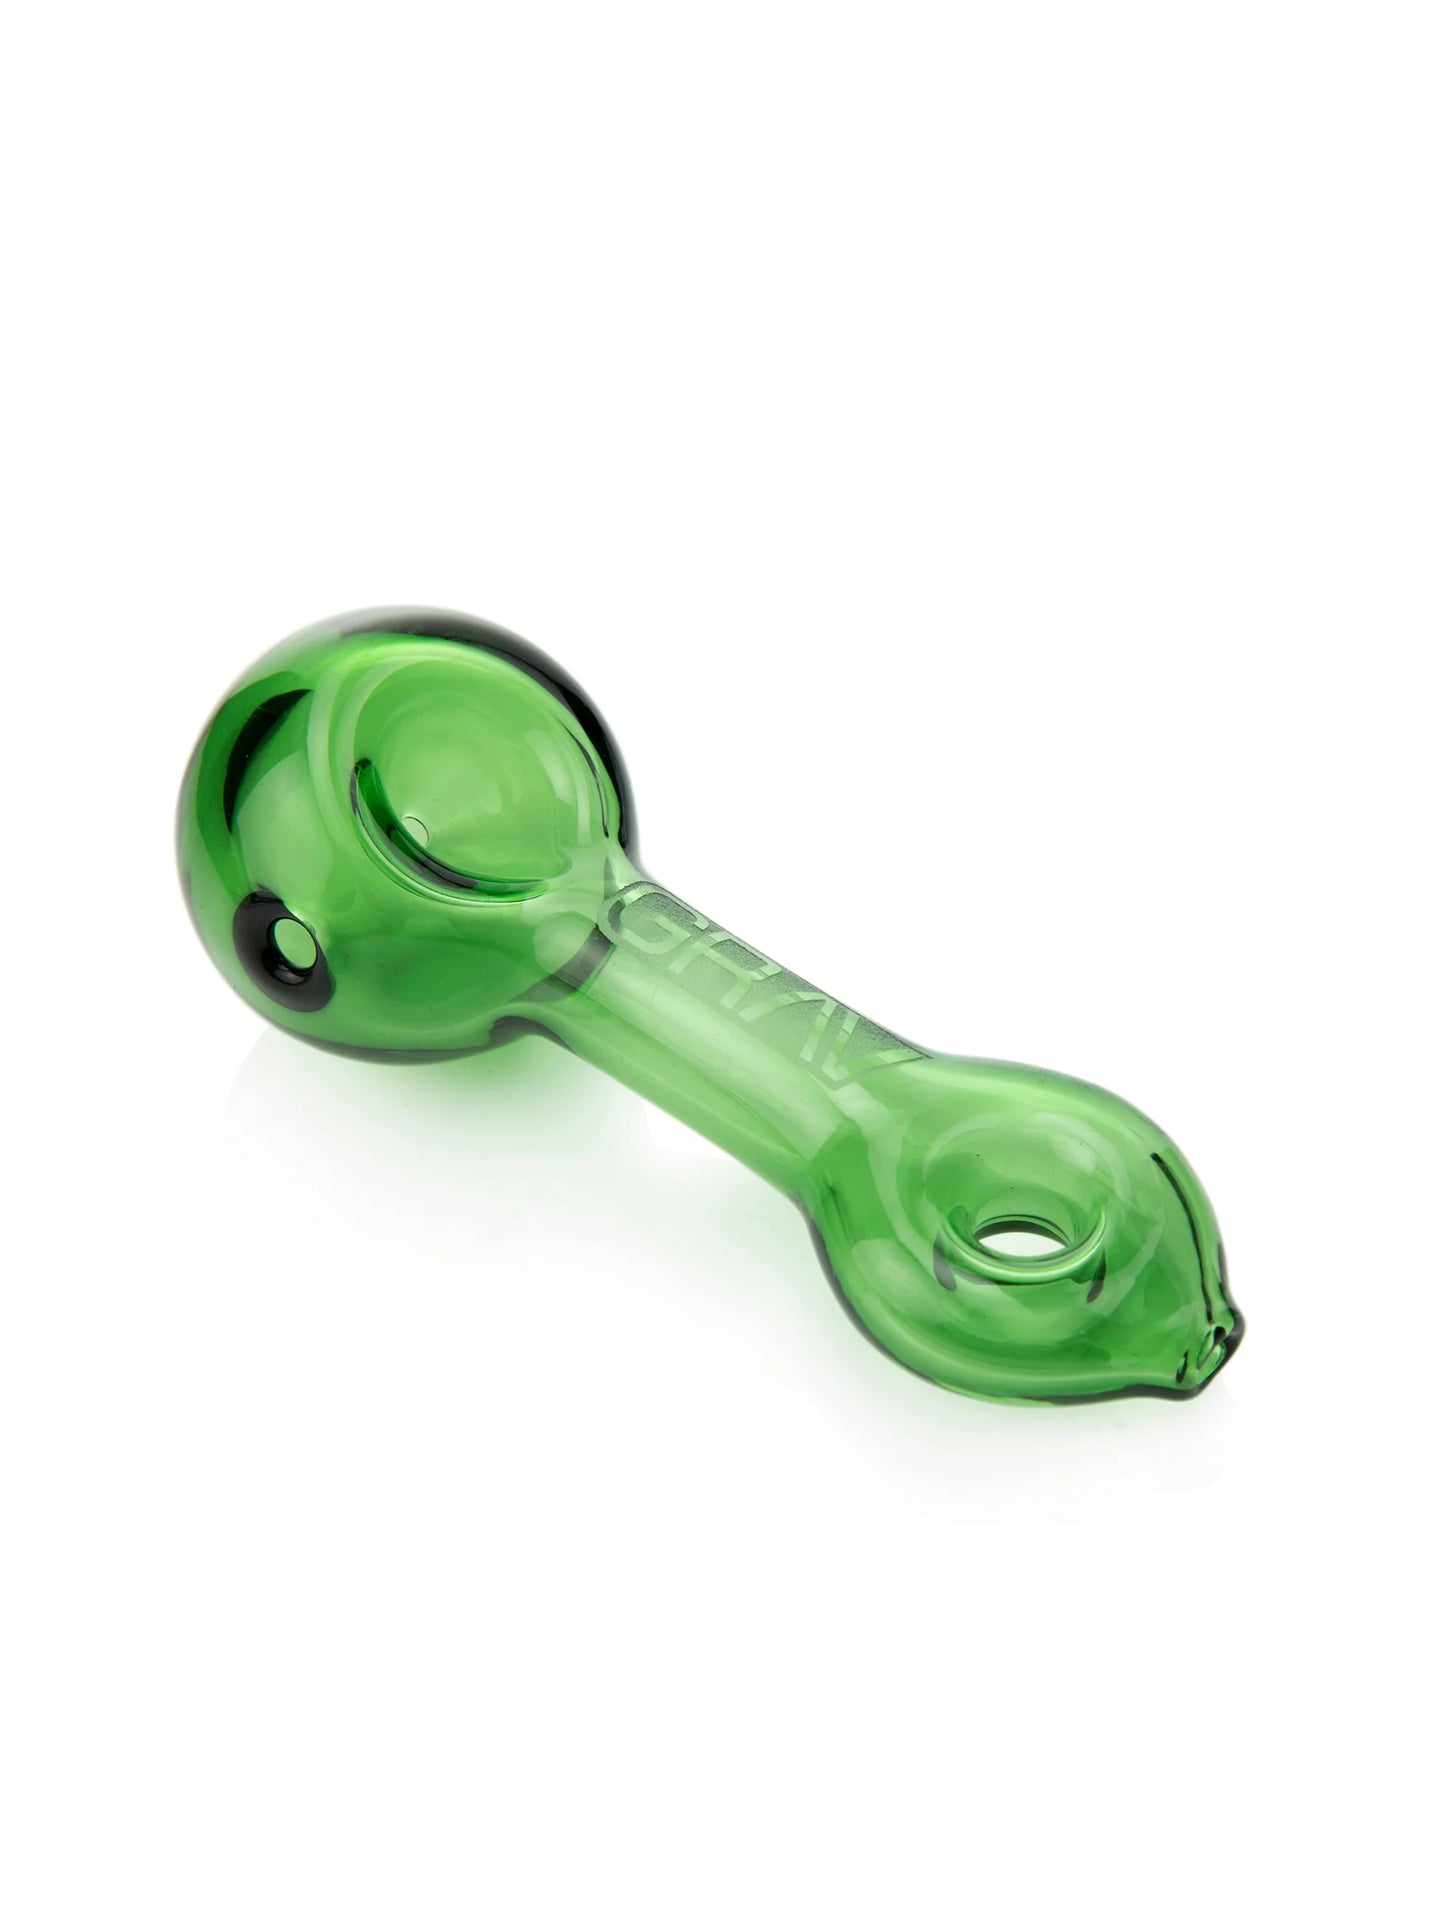 GRAV - Pipe, Glass, 9cm Mini Spoon